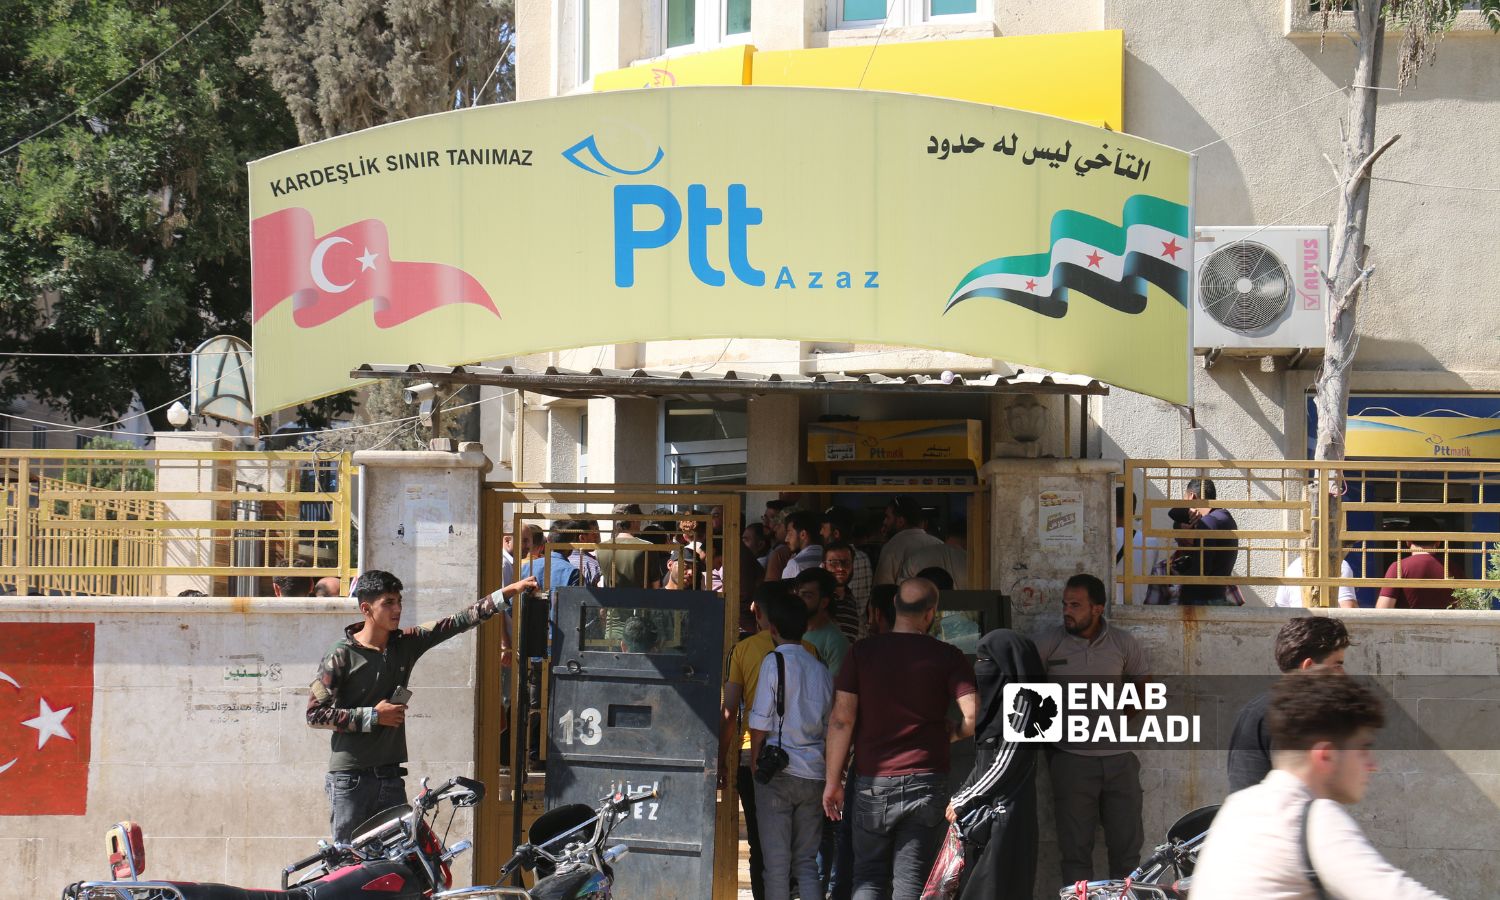 يشهد مركز البريد والشحن التركي "PTT" ازدحامًا بشكل يومي في مدينة اعزاز بريف حلب الشمالي- 23 من حزيران 2023 (/ ديان جنباز)